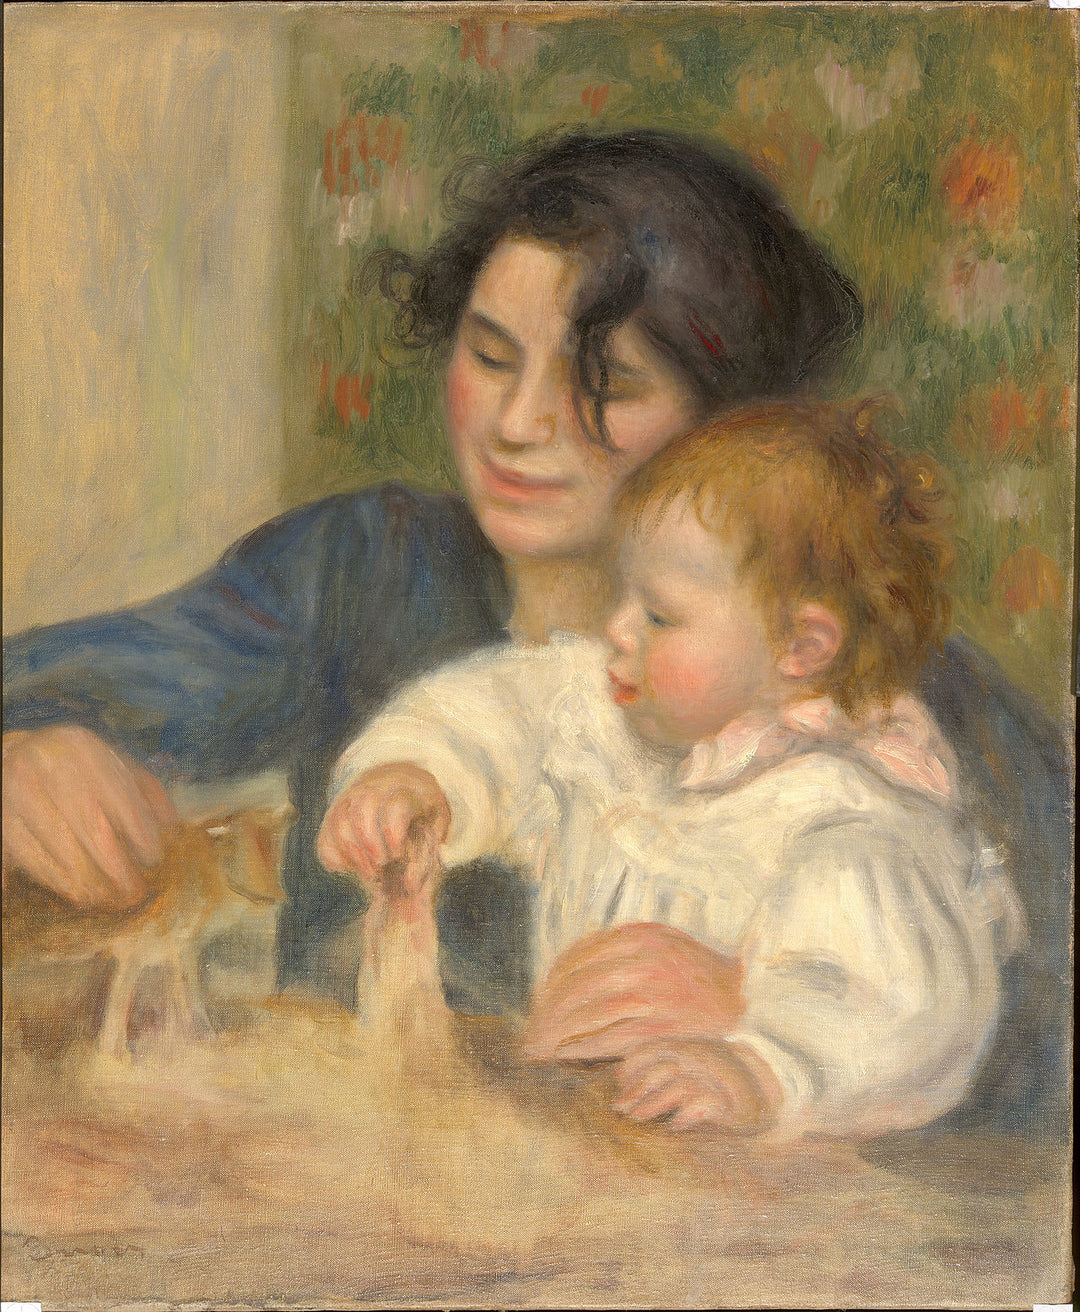 Gabrielle et Jean by Pierre-Auguste Renoir Reproduction for Sale by Blue Surf Art